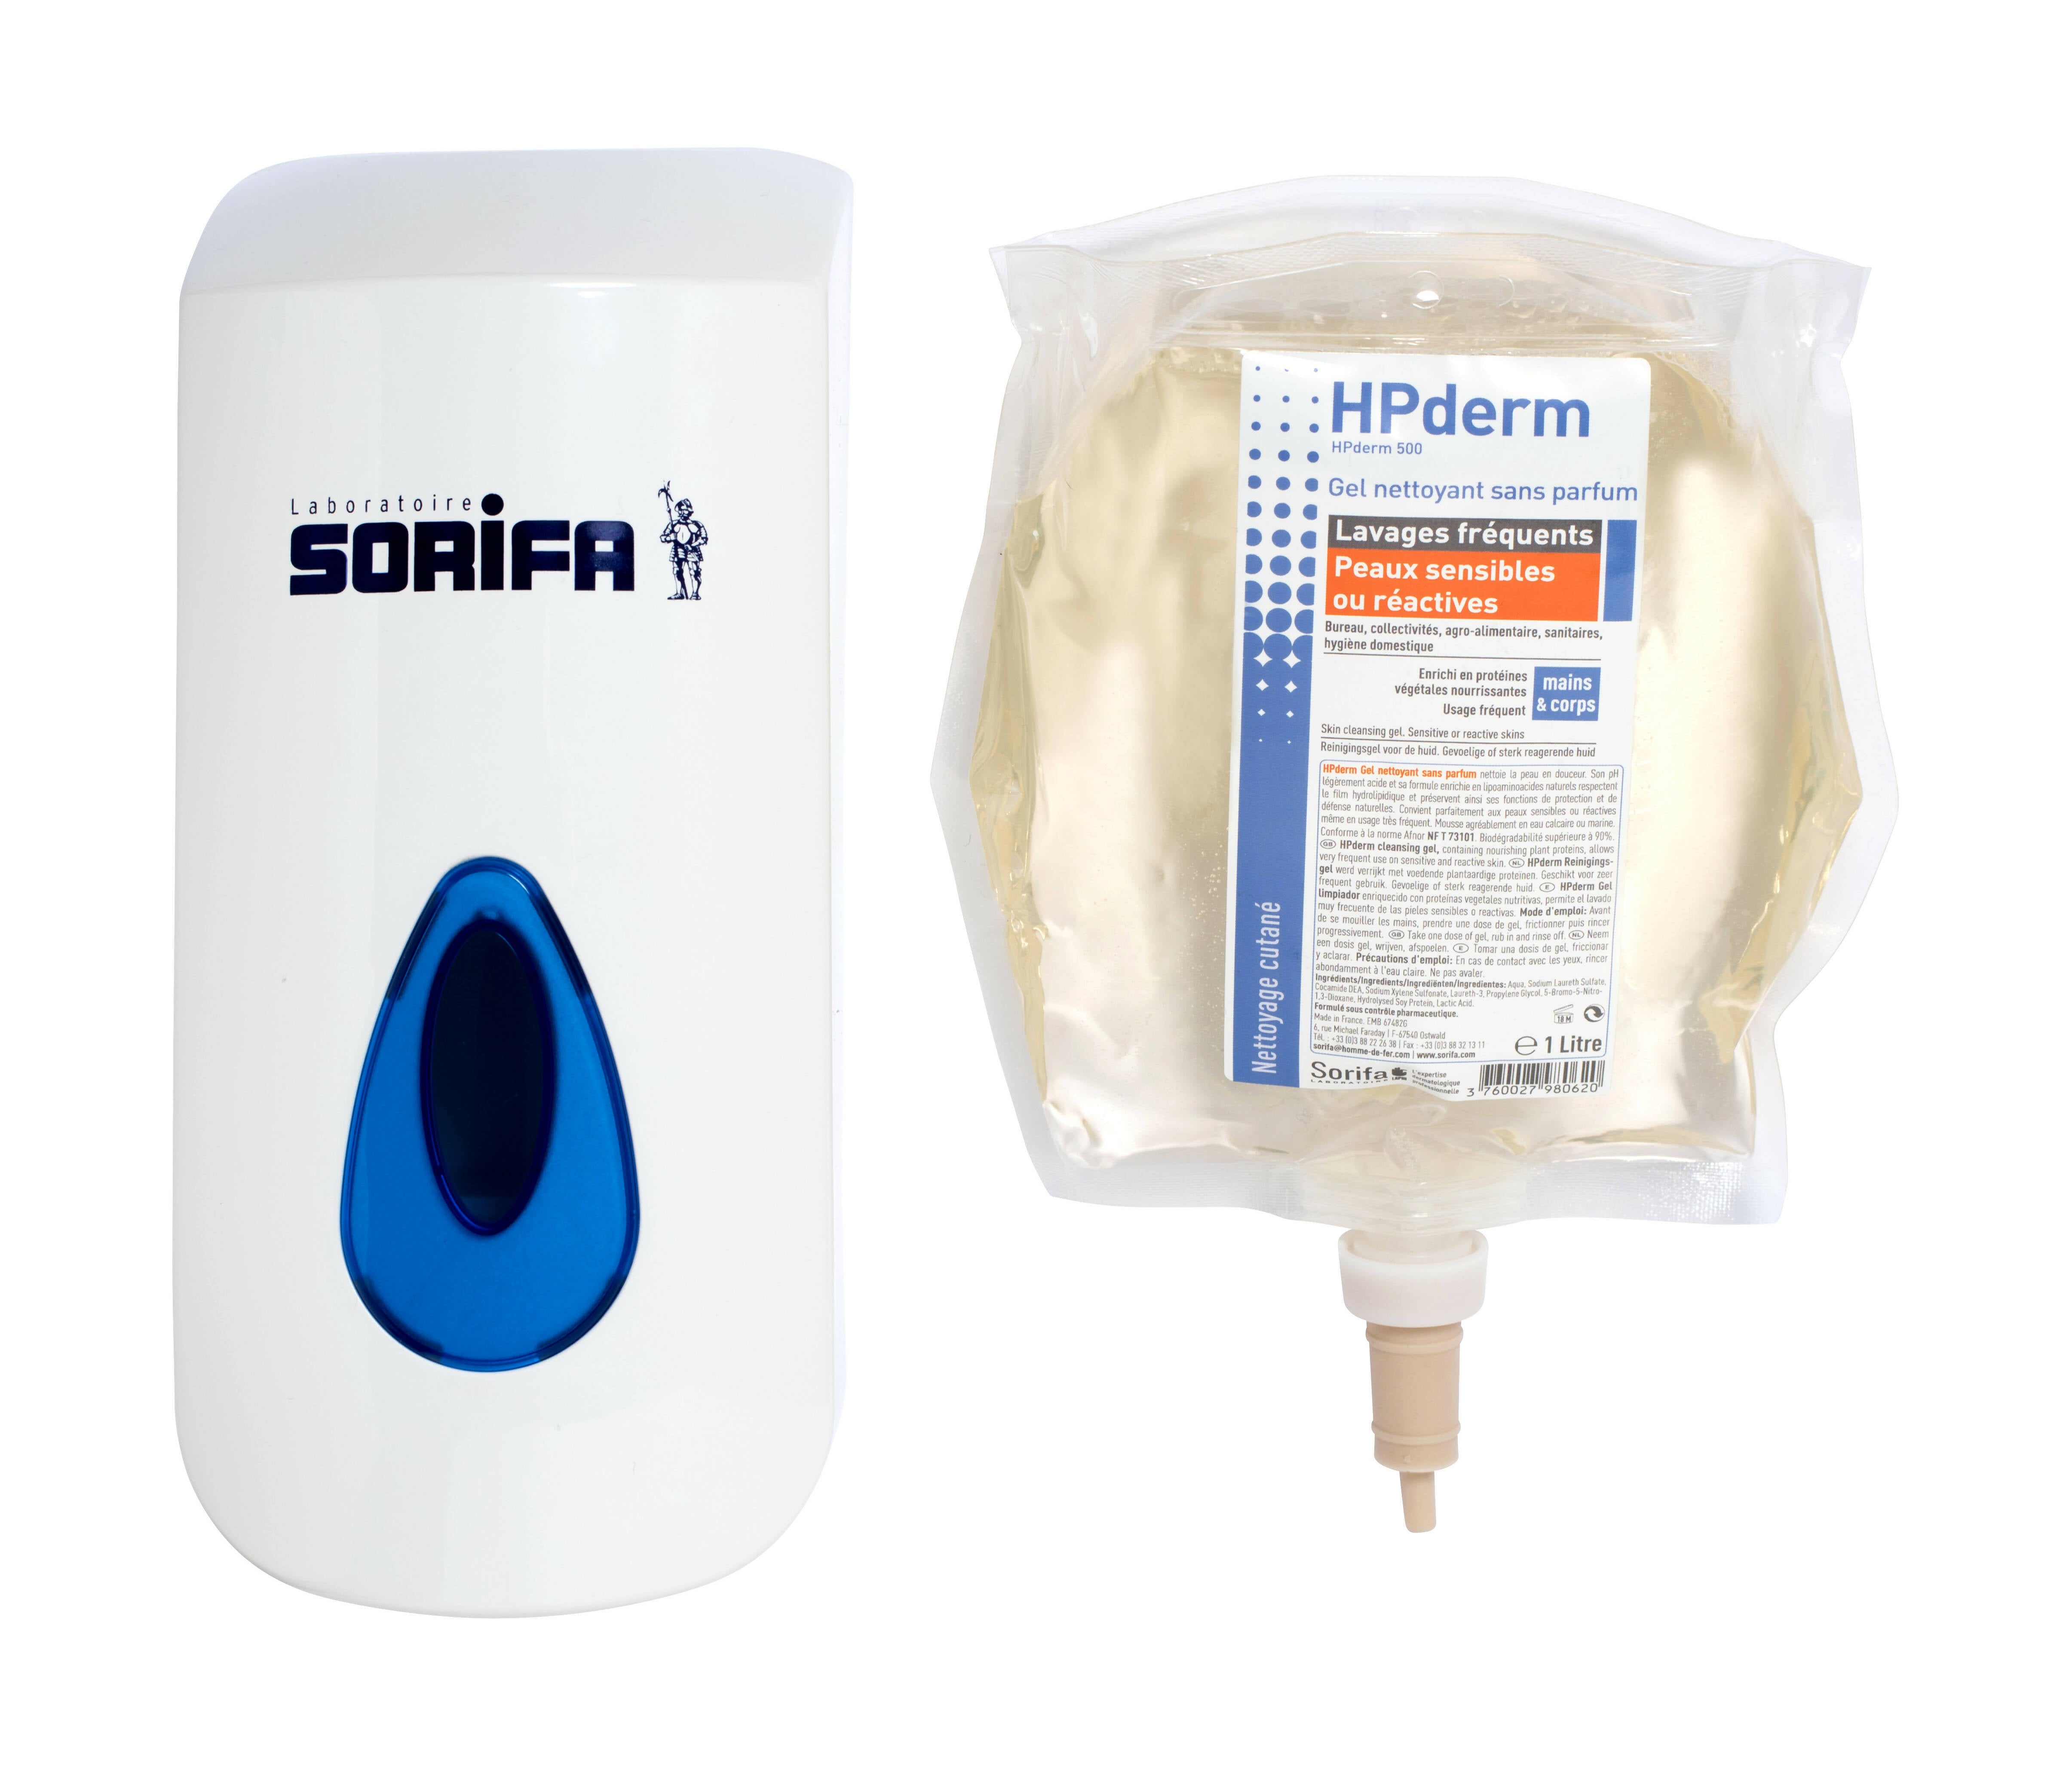 SORIFA - HPderm parfümfreies Reinigungsgel - Häufiges Waschen - Empfindliche oder reaktive Haut - Hände und Körper - Mit schützenden Sojaproteinen - Neutraler pH-Wert, seifenfrei - 800-ml-Beutel - 0